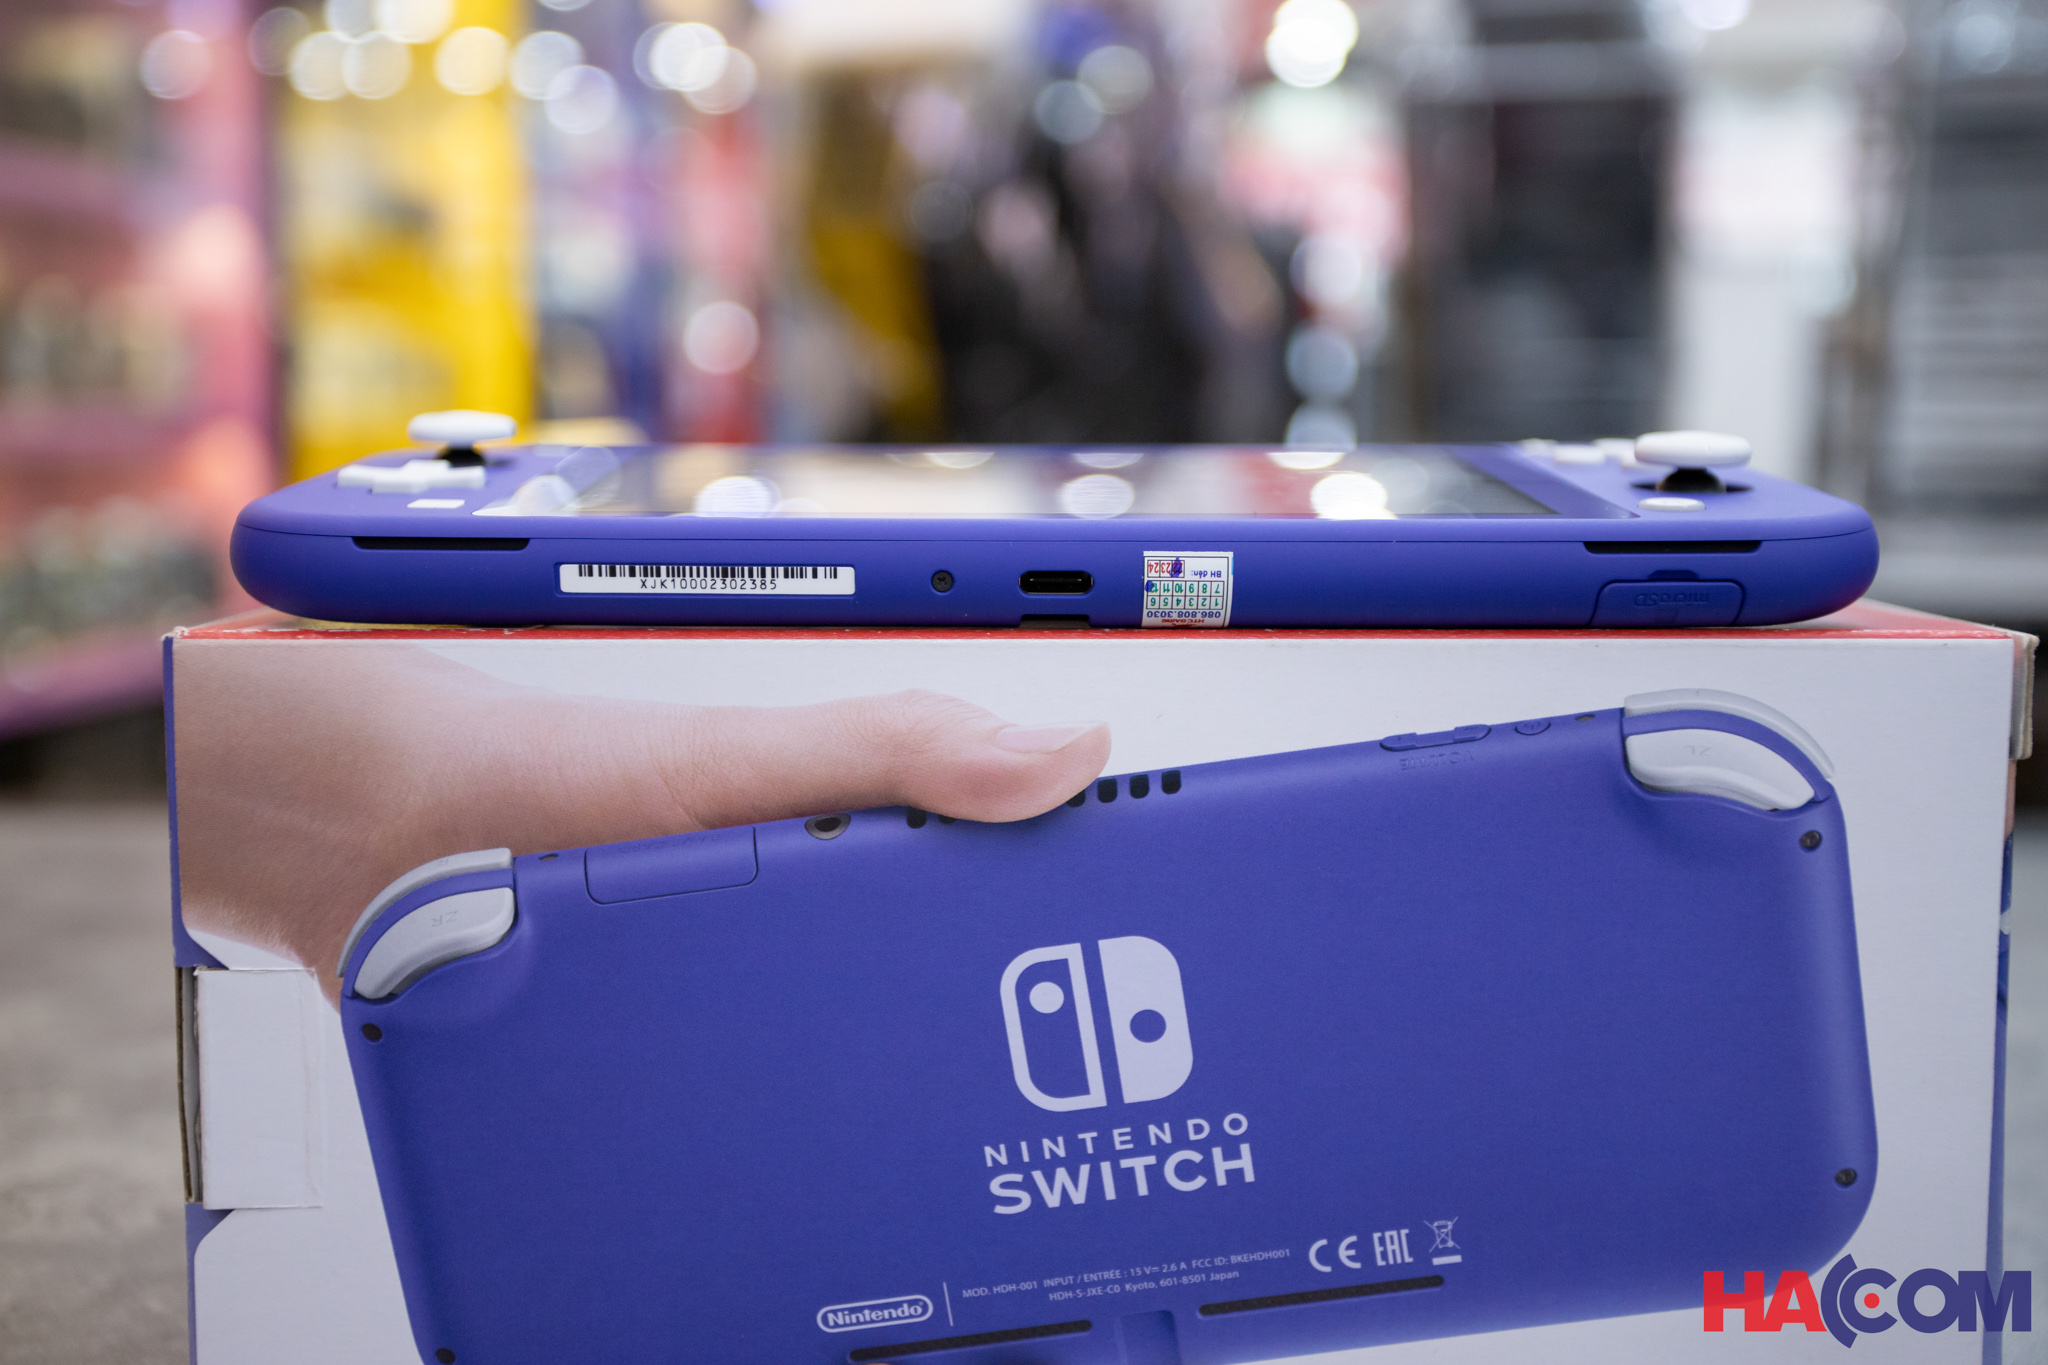 Máy chơi game Nintendo Switch Lite - Blue - Màu xanh blue